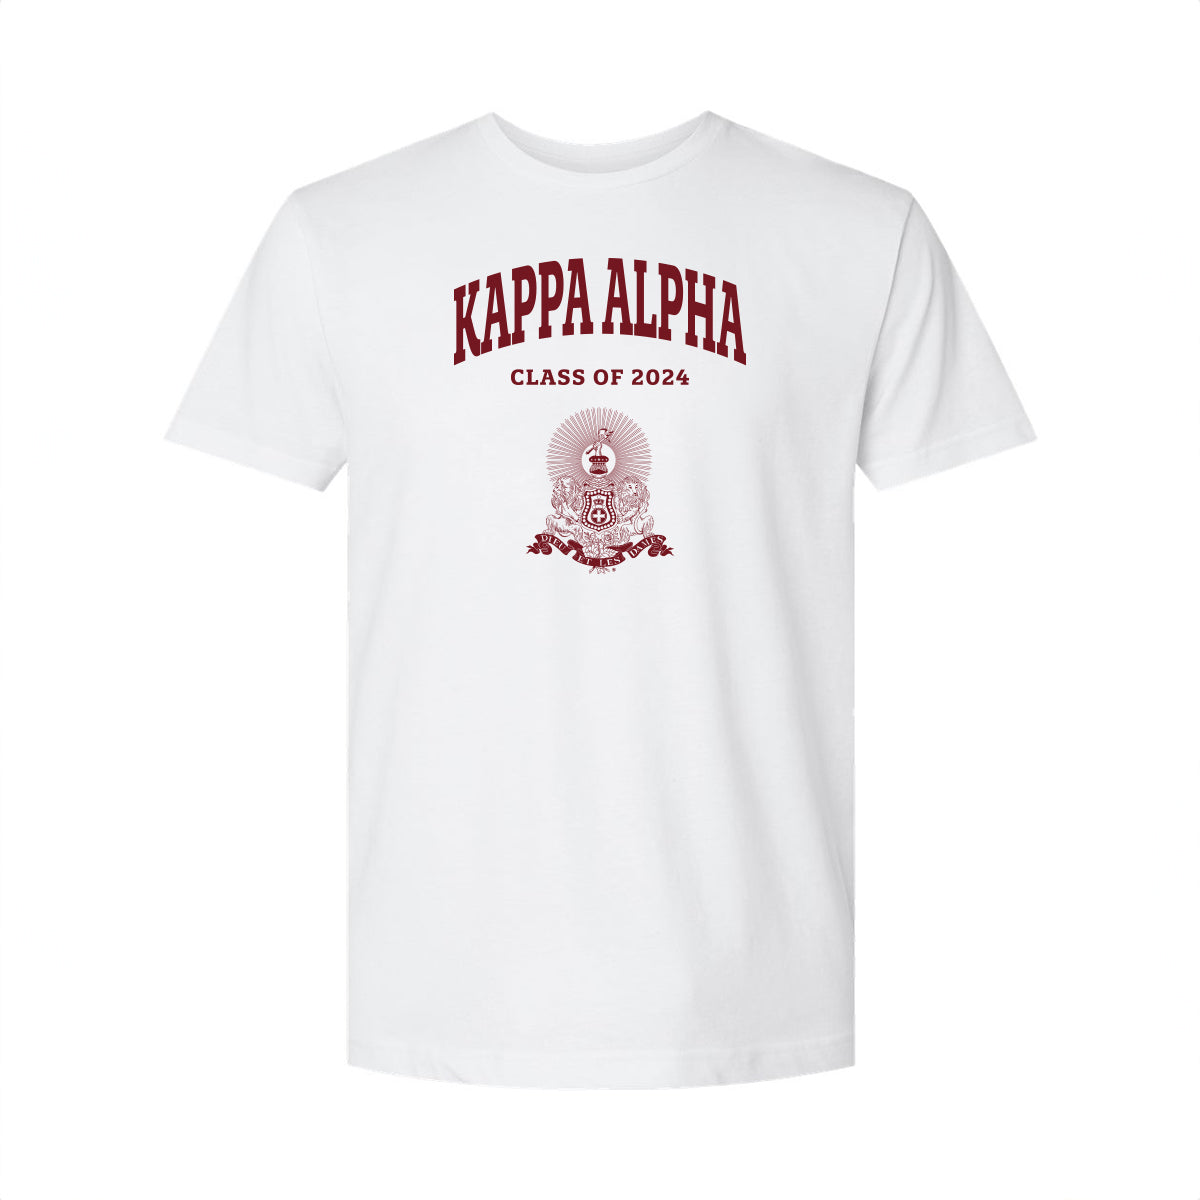 New! Kappa Alpha Class of 2024 Graduation T-Shirt